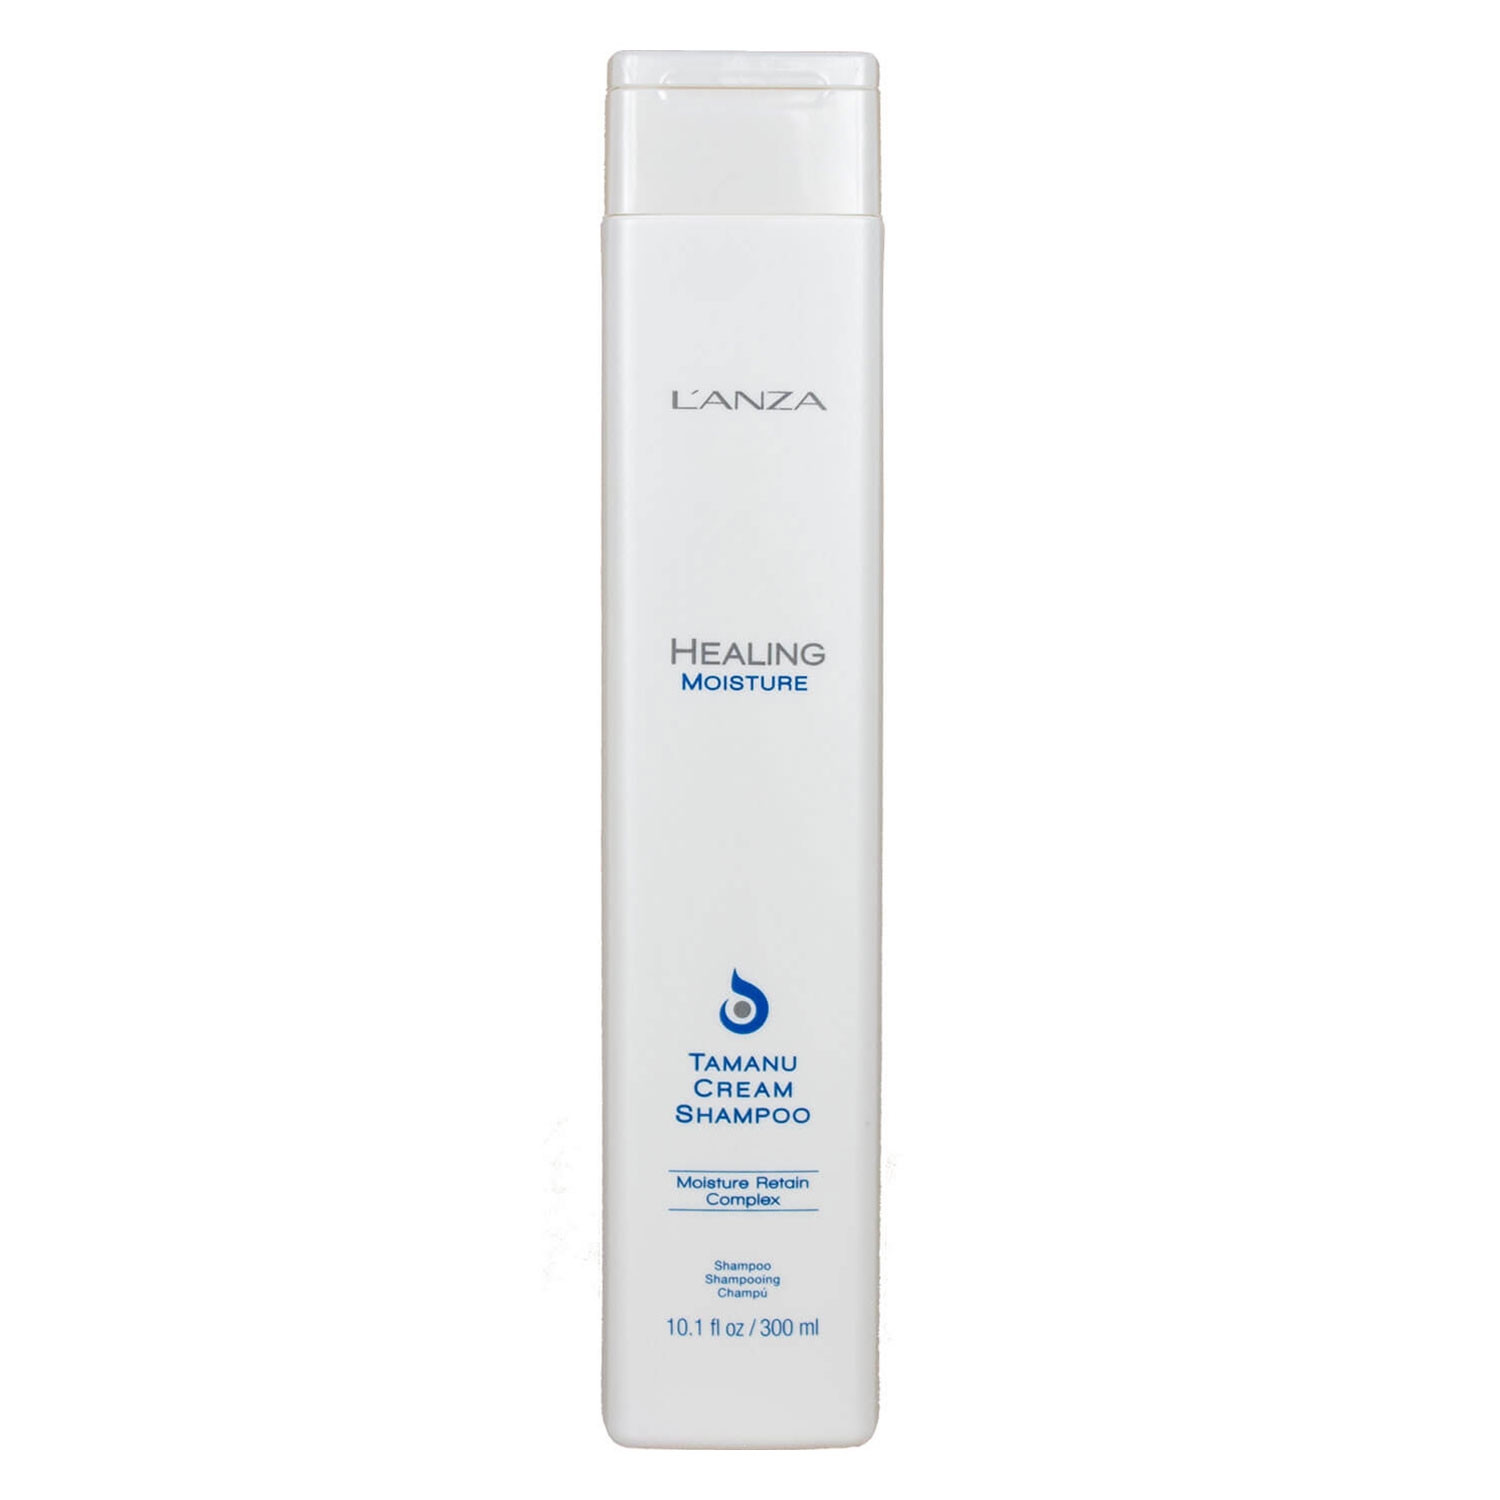 Produktbild von Healing Moisture - Tamanu Cream Shampoo